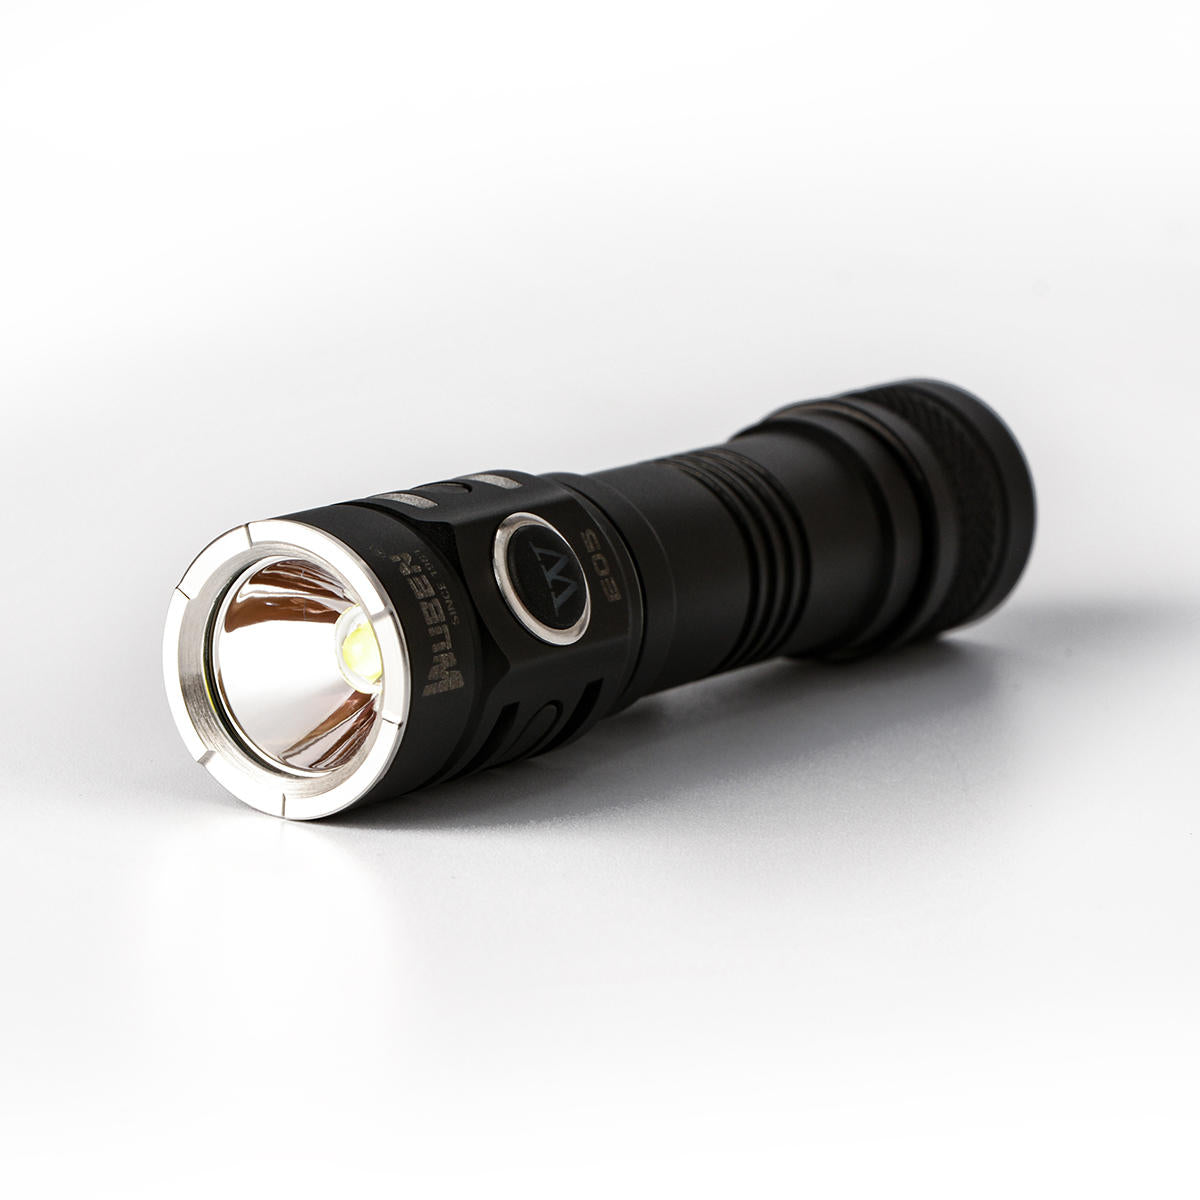 Wuben E05 XPL 900Lumens  14500 Magnetic Tail EDC LED Flashlight